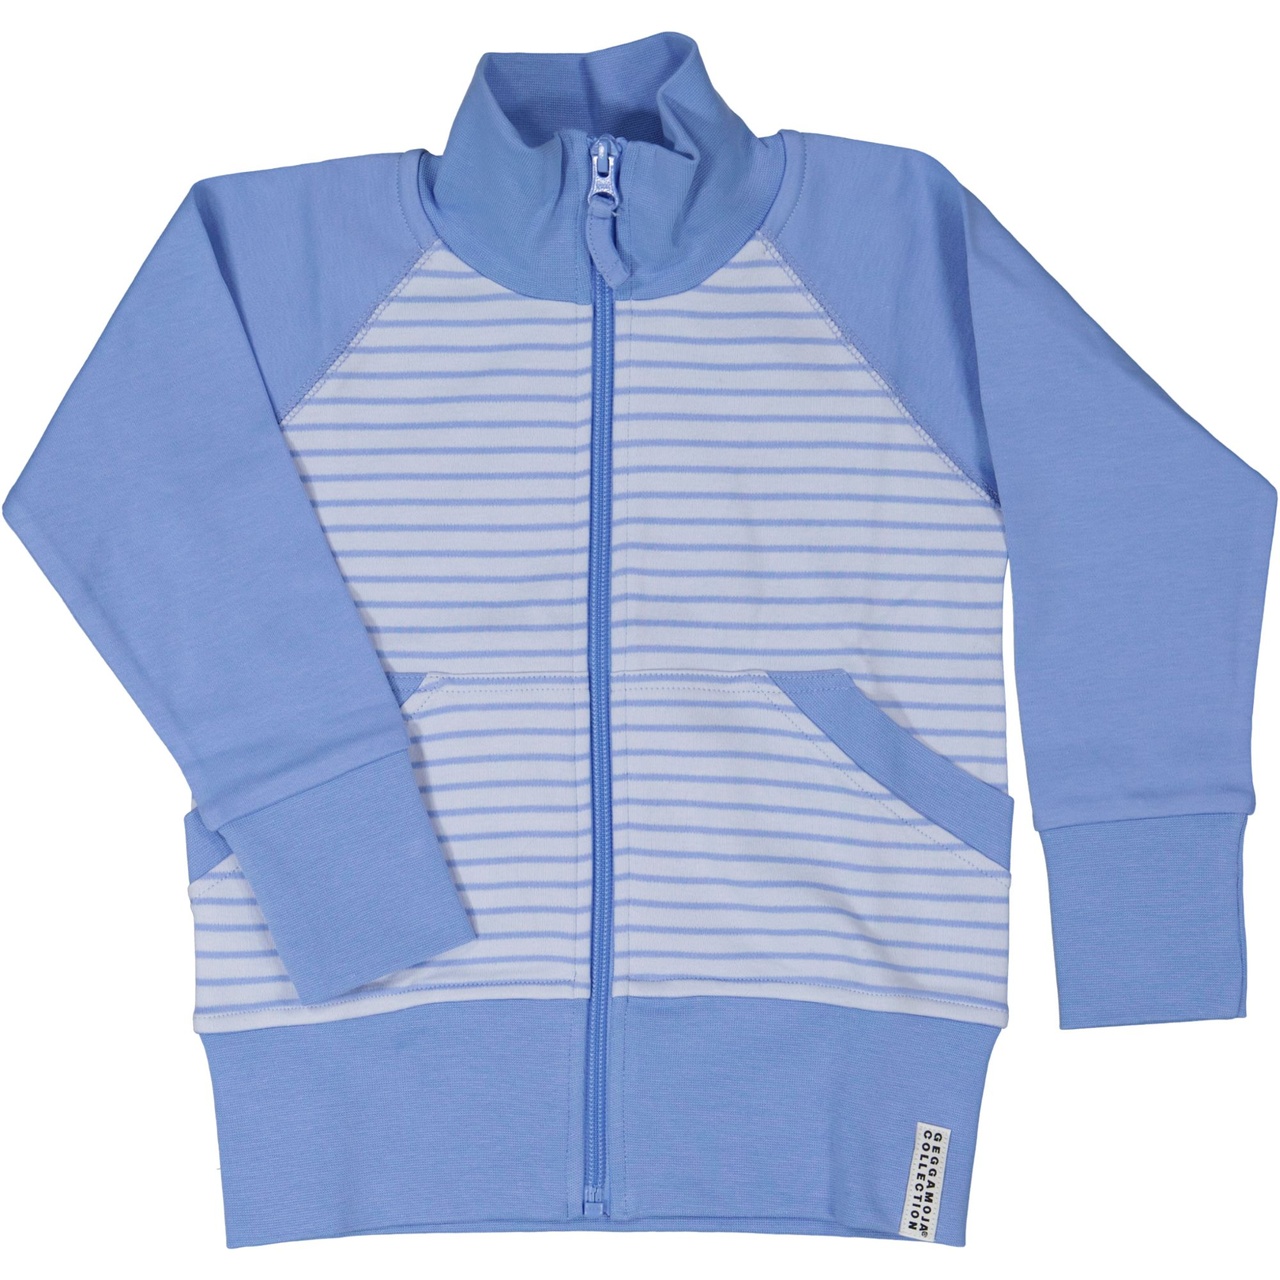 Zip sweater Light blue/blue  110/116